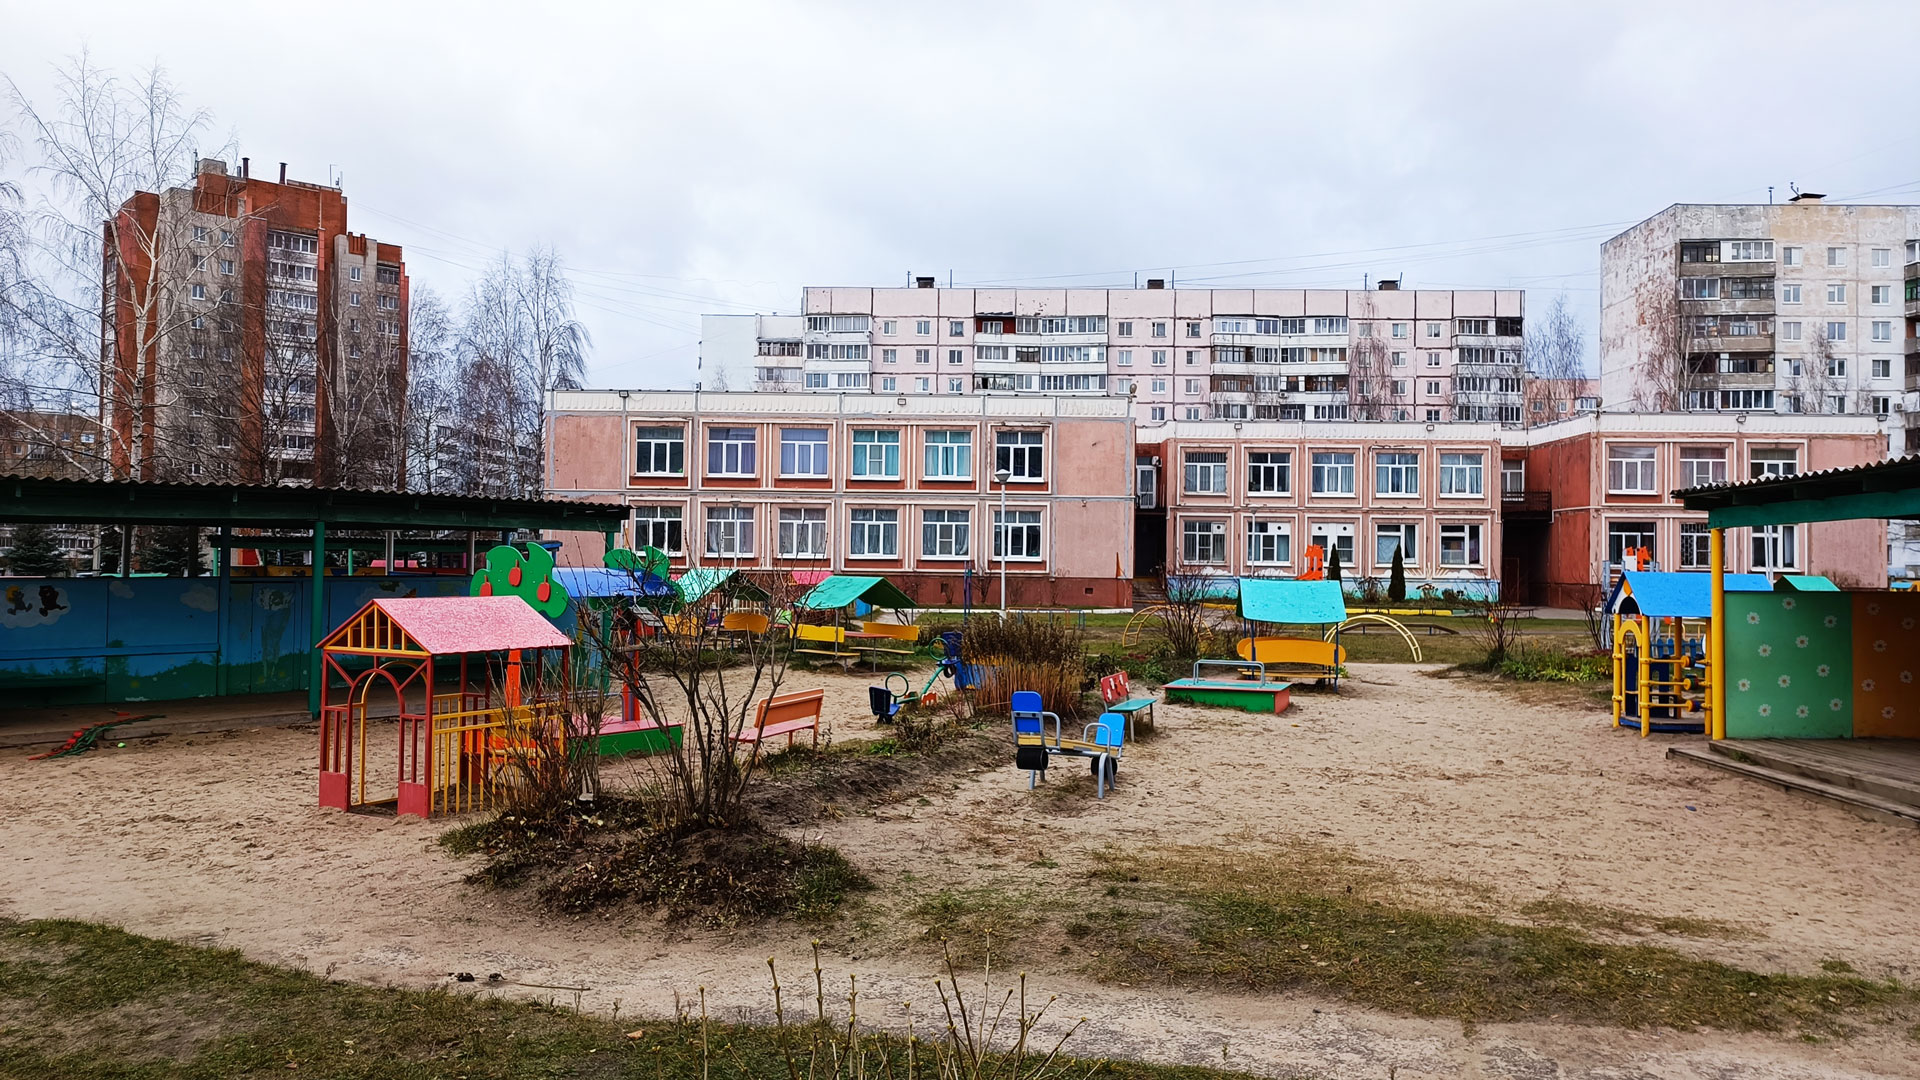 Детский сад 191 Ярославль: общий вид здания.